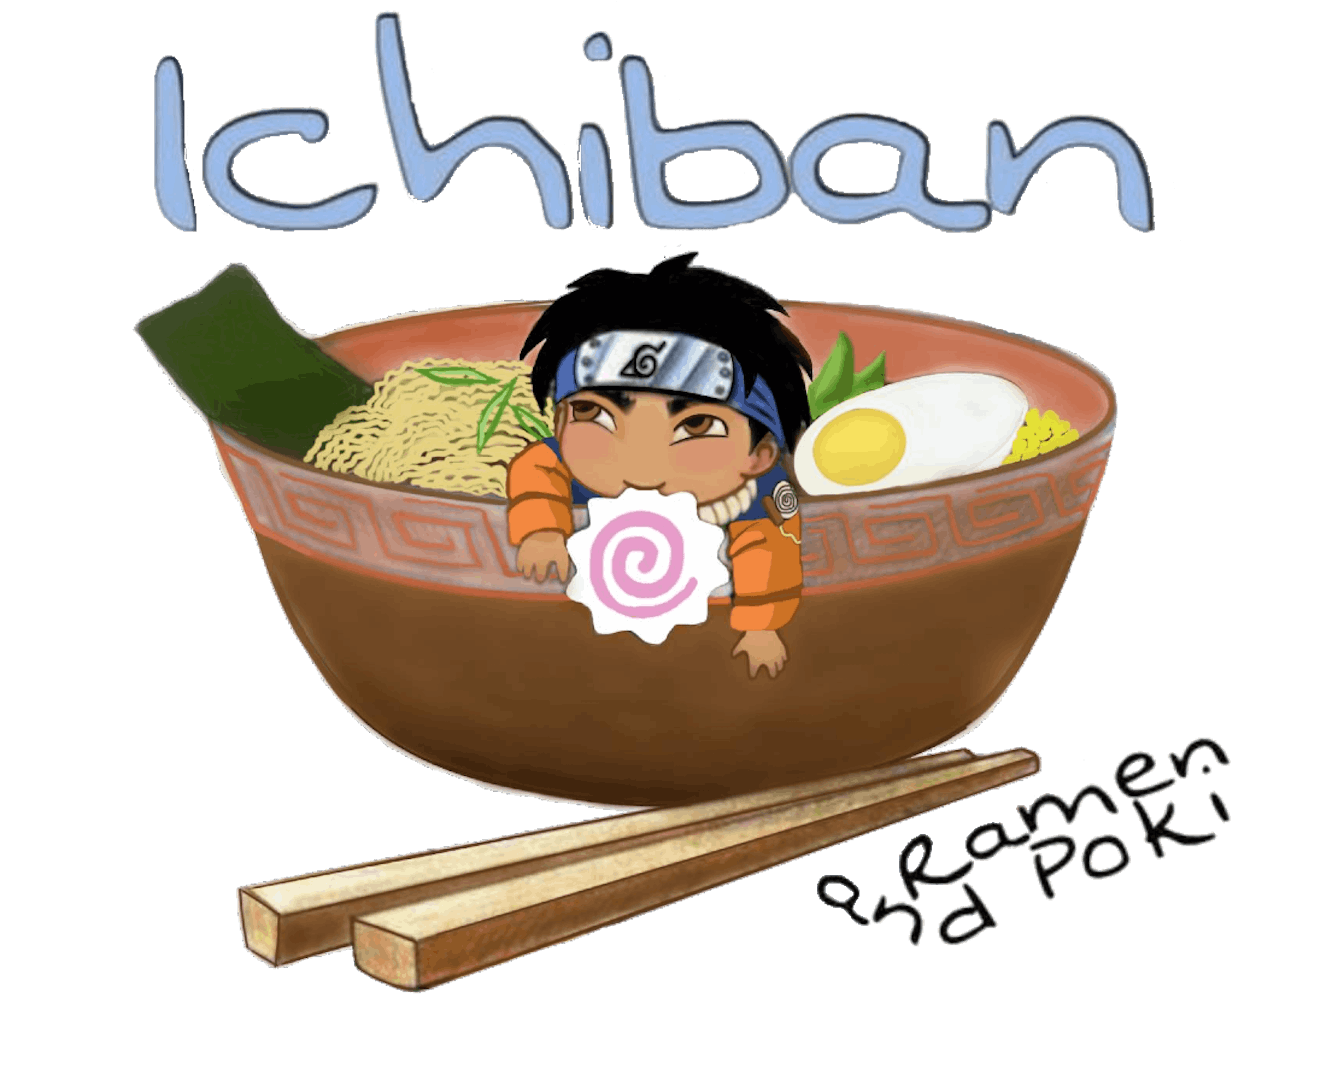 Ichiban Ramen & Poki – Fresno Foodways